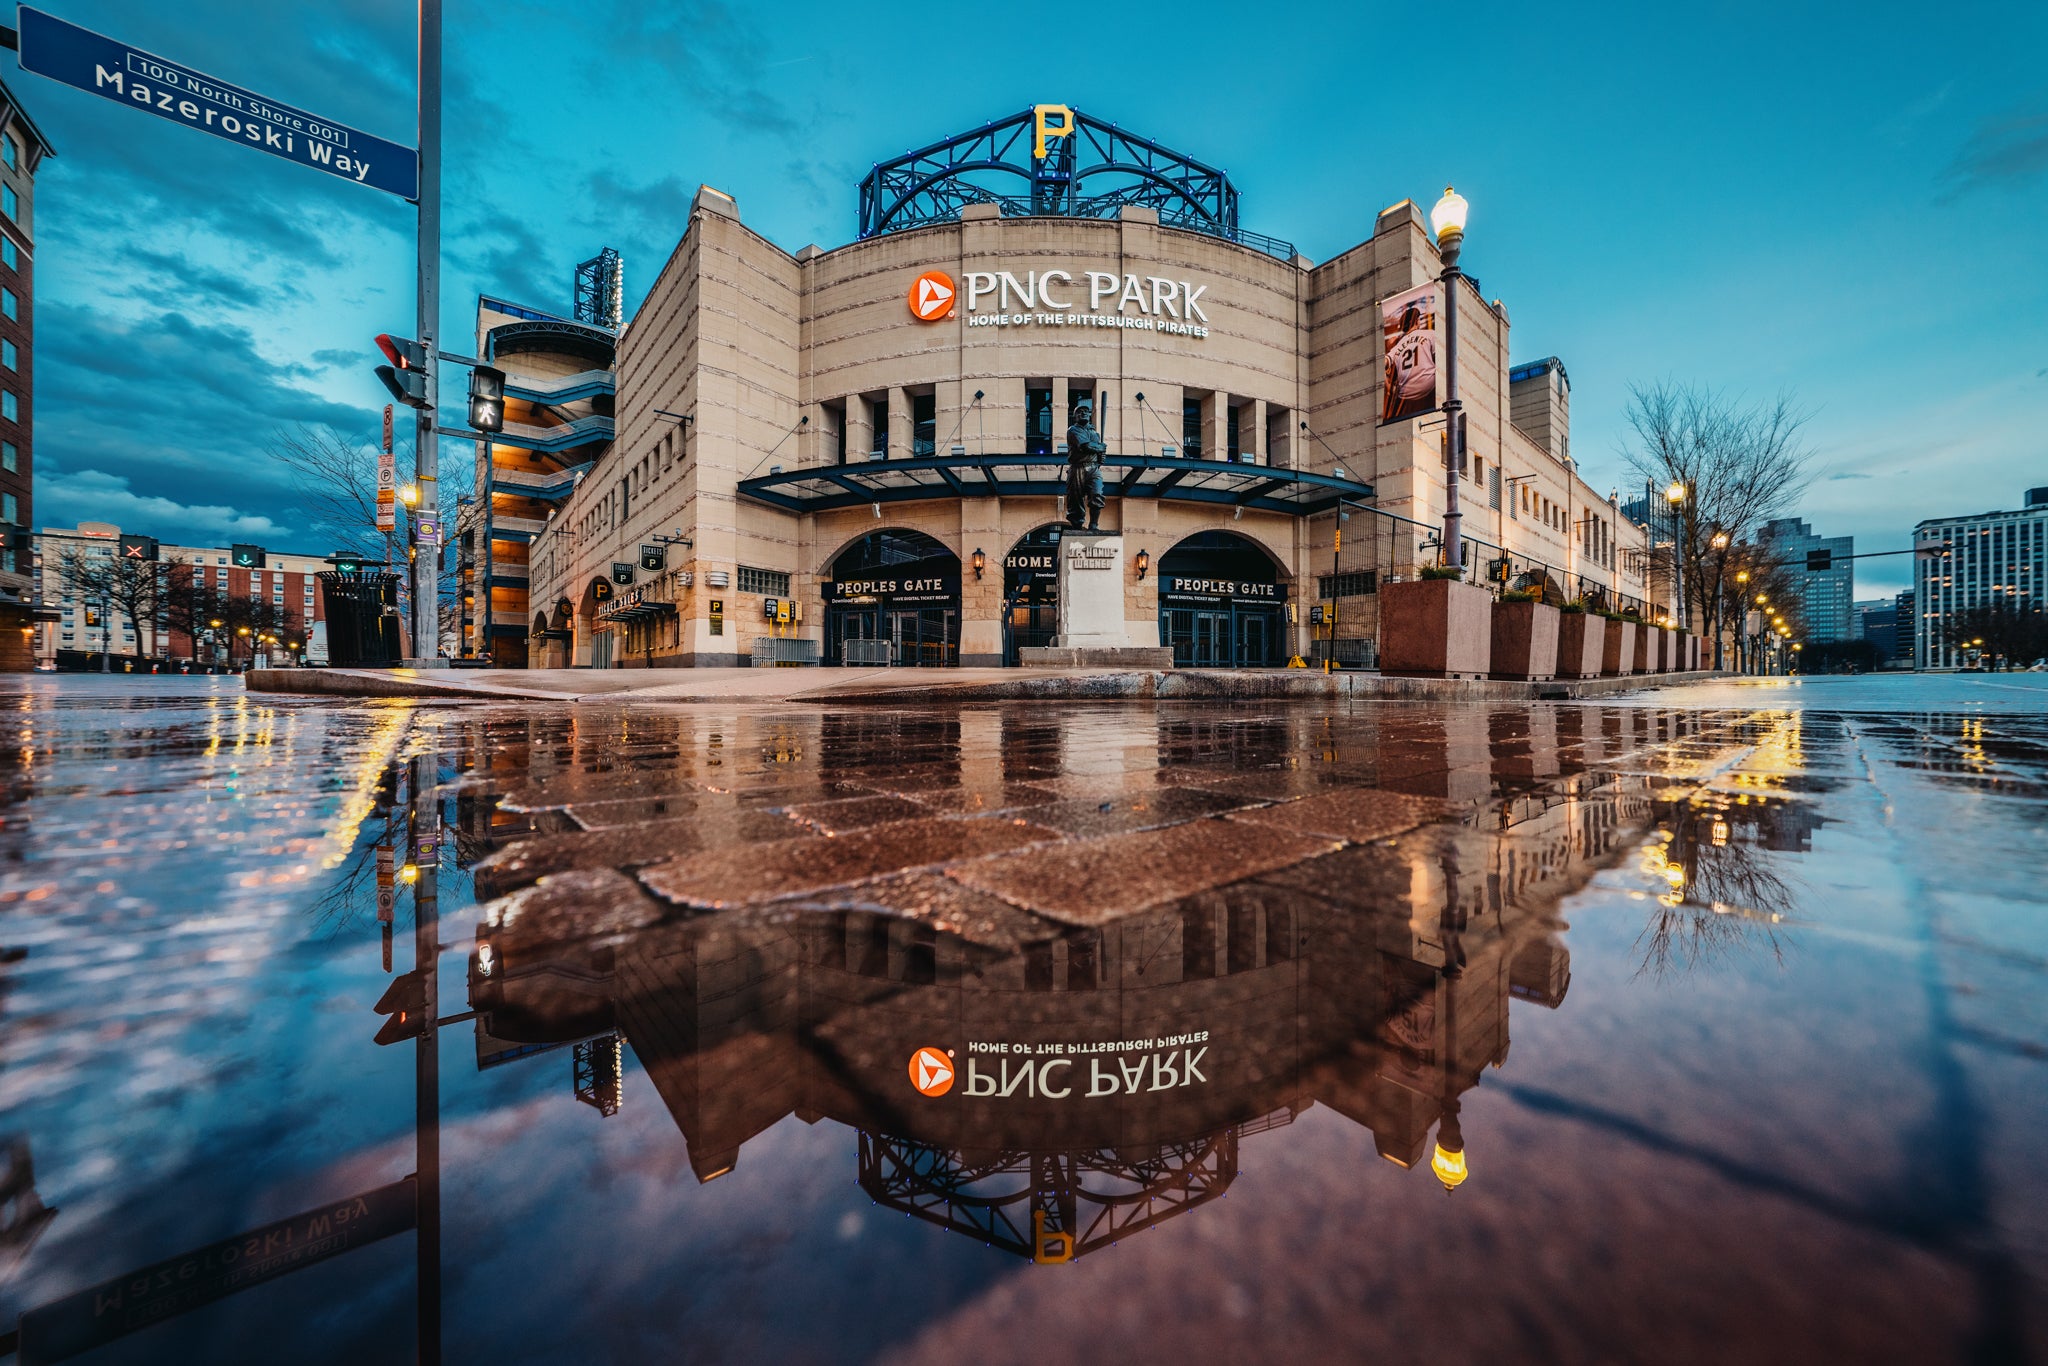 PNC Park Photo Prints – Dustin McGrew Photography